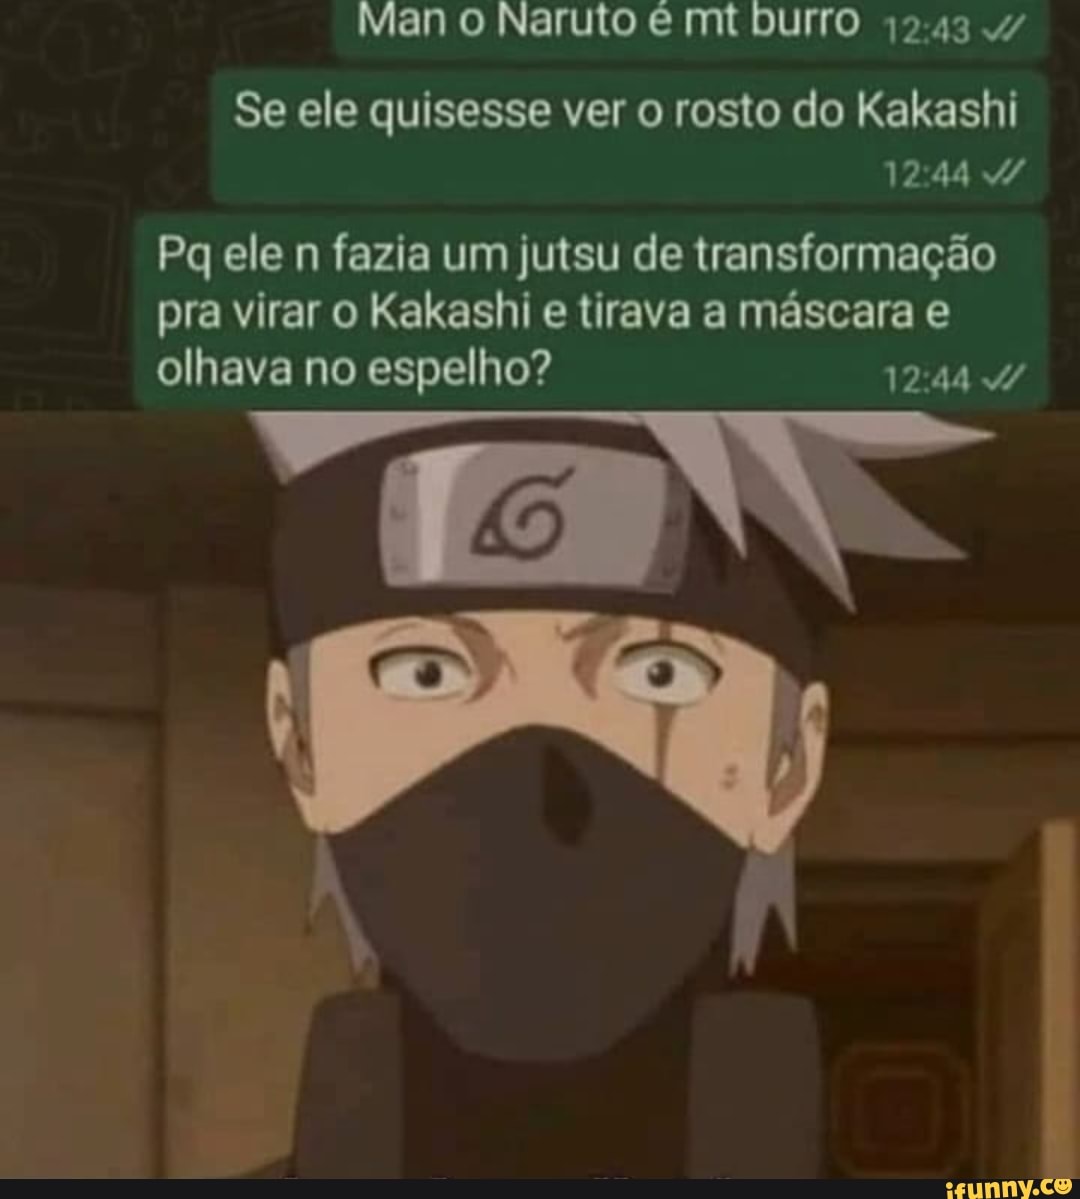 Mano Naruto mt burro Se ele quisesse ver o rosto do Kakashi Pq ele n fazia  um Jutsu de transformação pra virar o Kakashi e tirava a máscara e olhava  no espelho? 